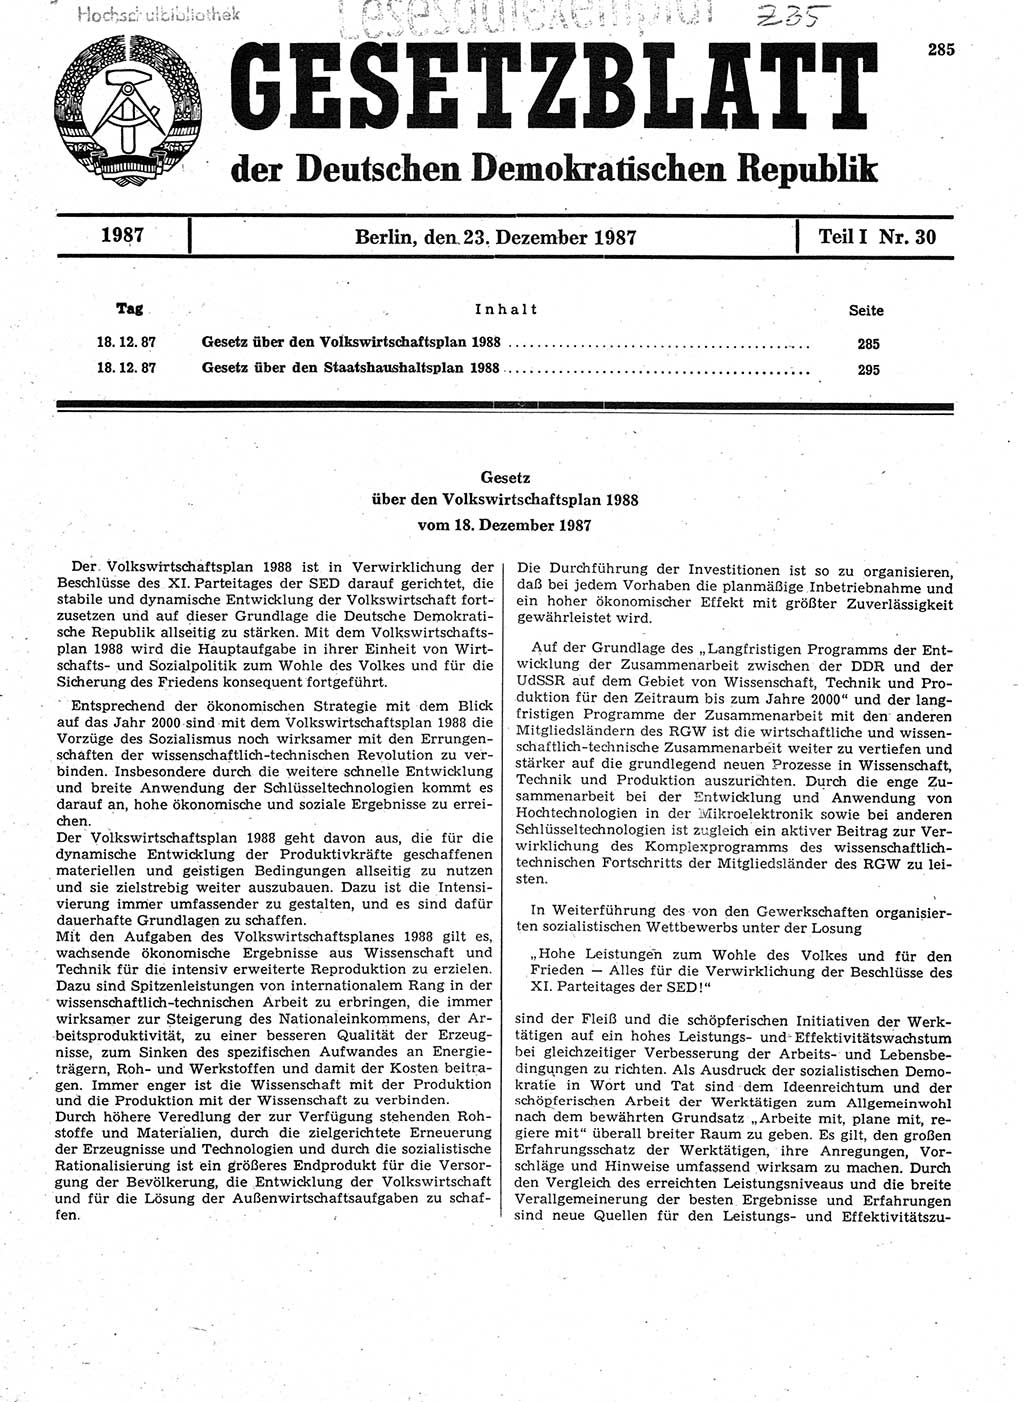 Gesetzblatt (GBl.) der Deutschen Demokratischen Republik (DDR) Teil Ⅰ 1987, Seite 285 (GBl. DDR Ⅰ 1987, S. 285)